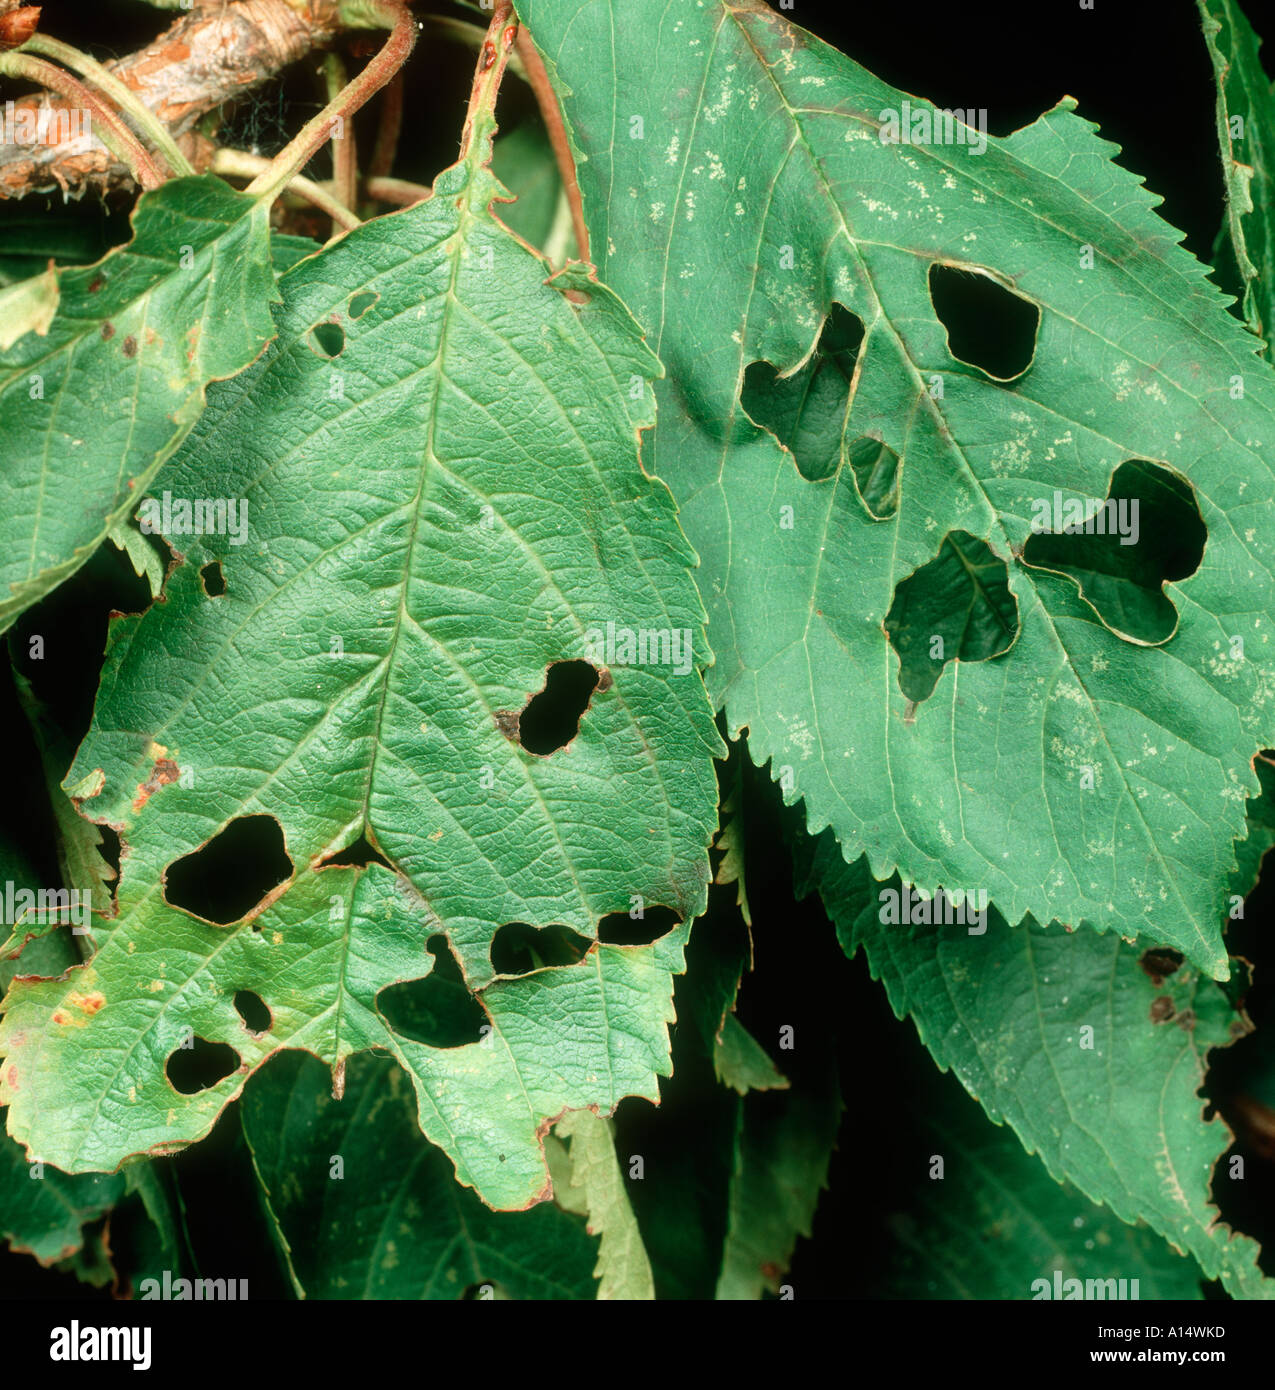 Orificio de disparo Pseudomonas syringae mors prunorum sobre hojas de cerezo Foto de stock